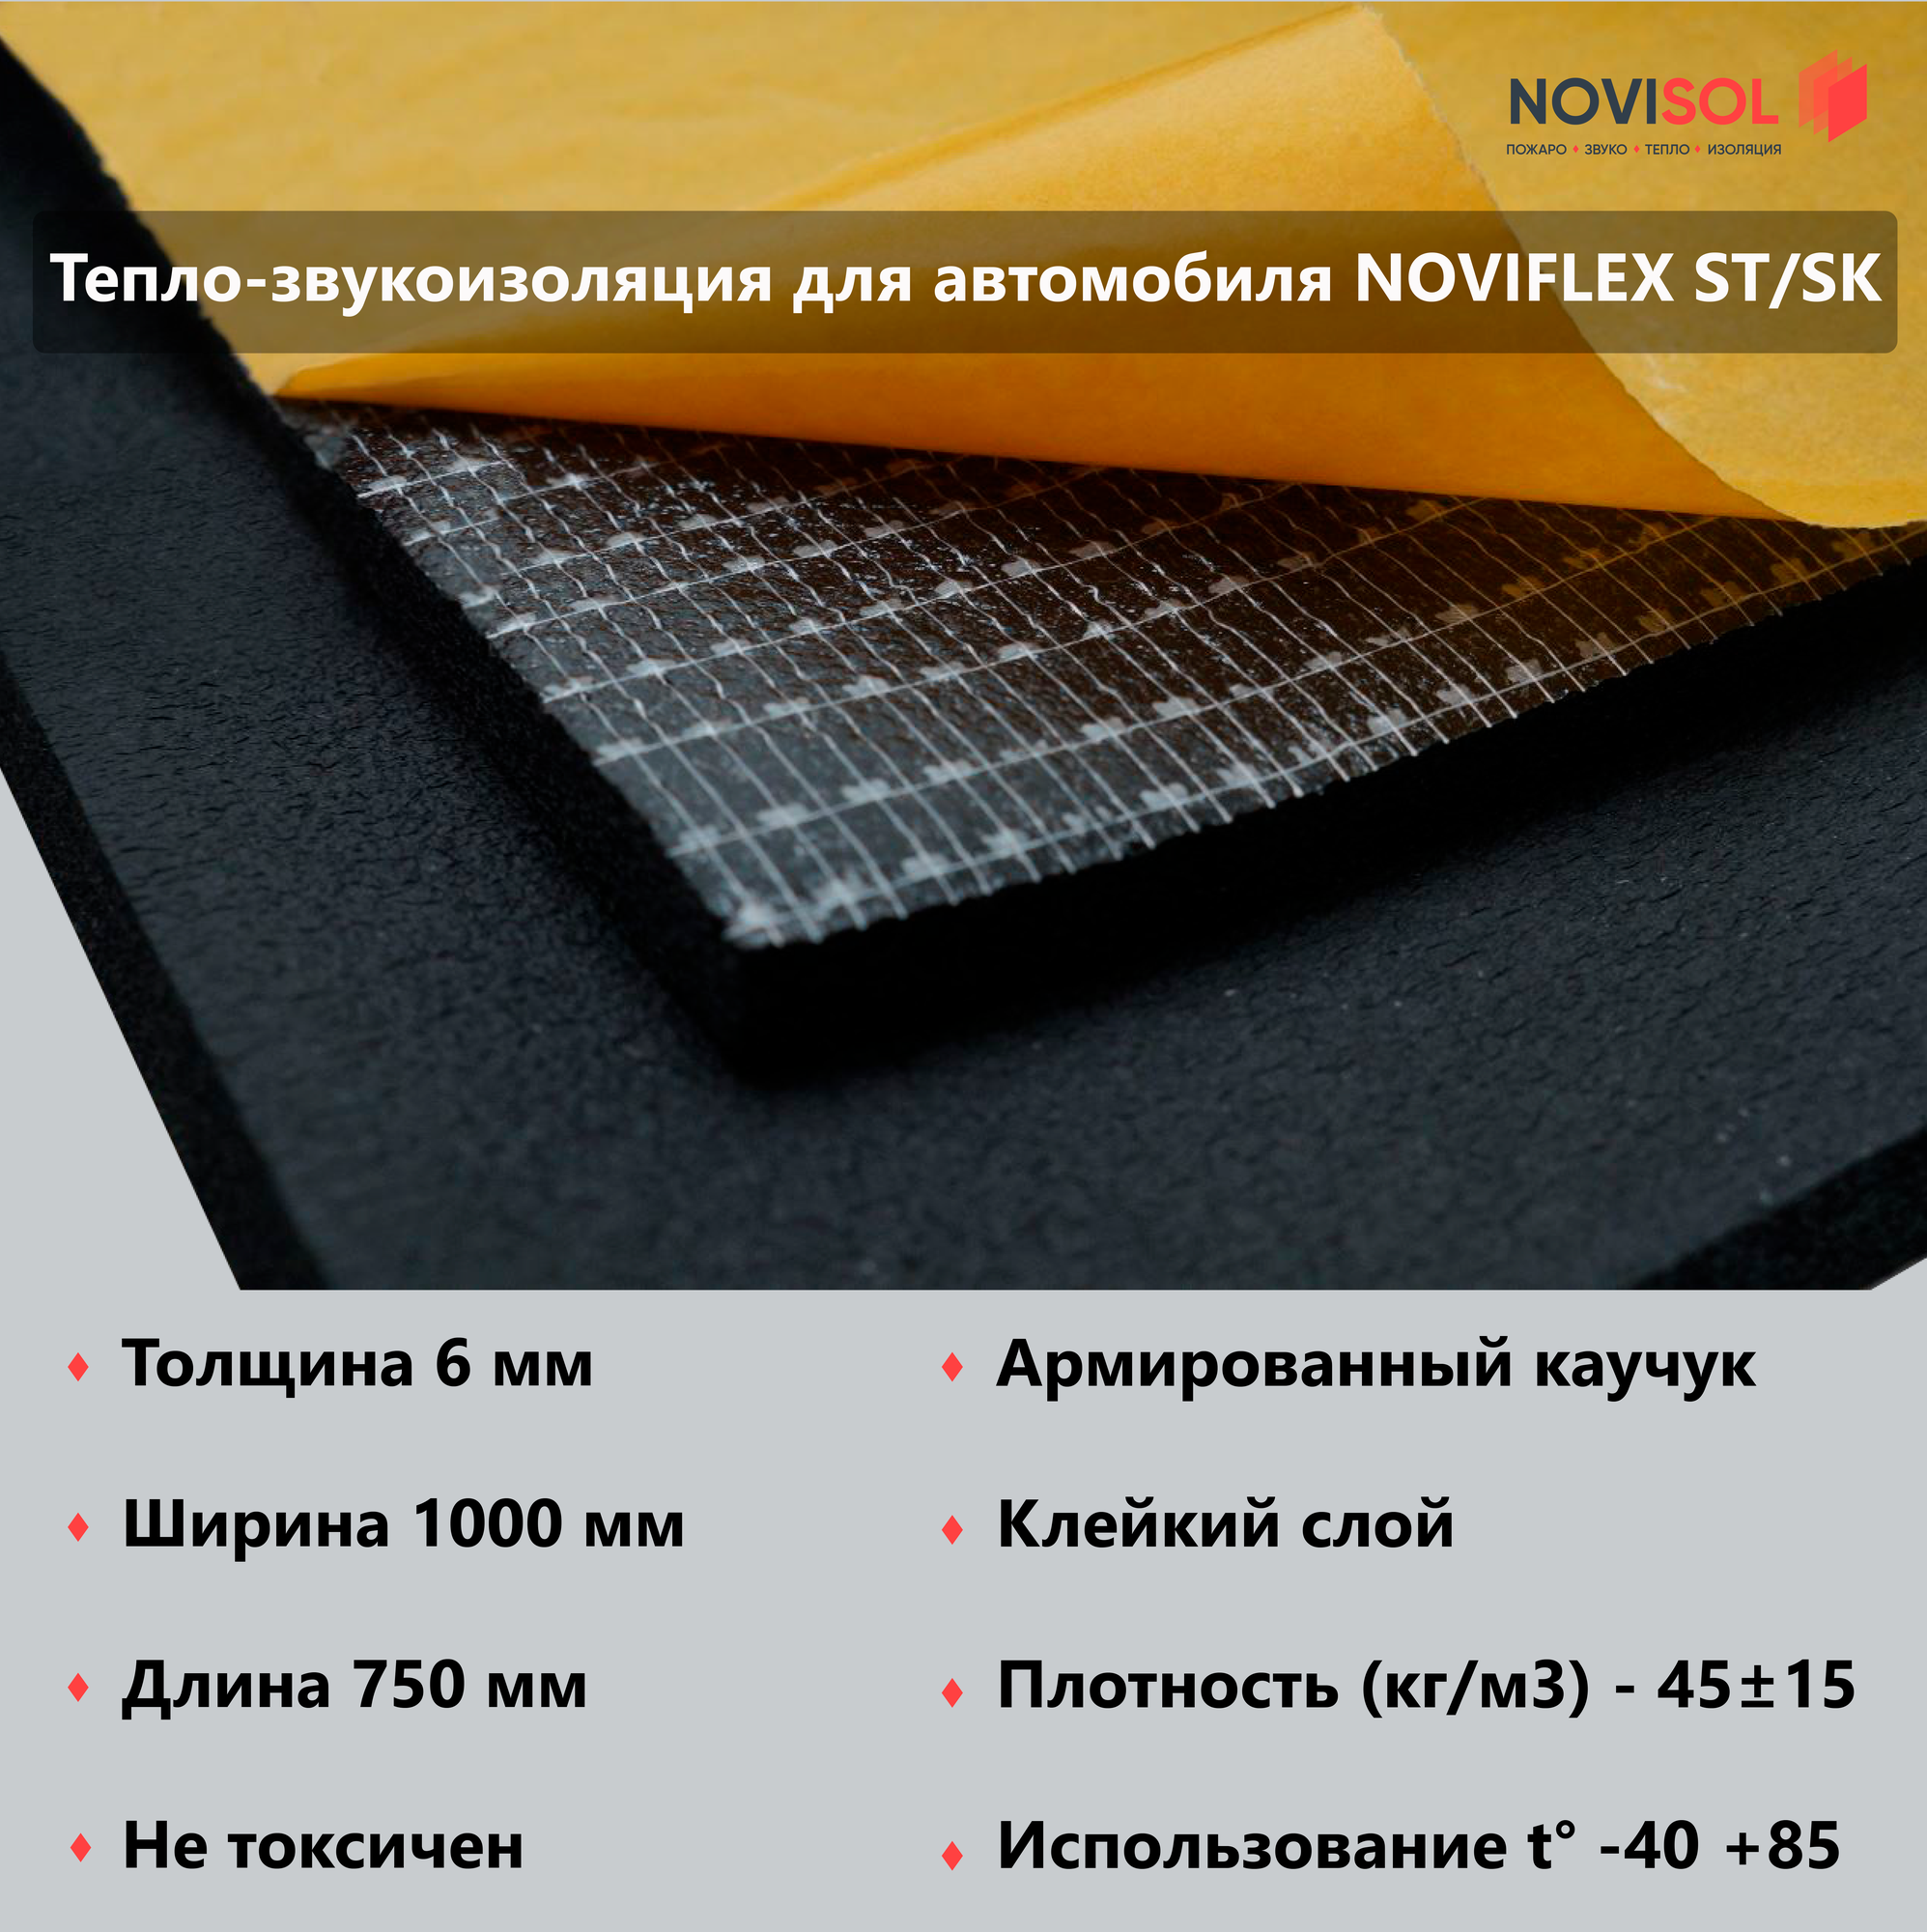 Тепло-звукоизоляционная самоклеящаяся пластина NOVIFLEX ST/SK 06х1000-075 вспененный каучук